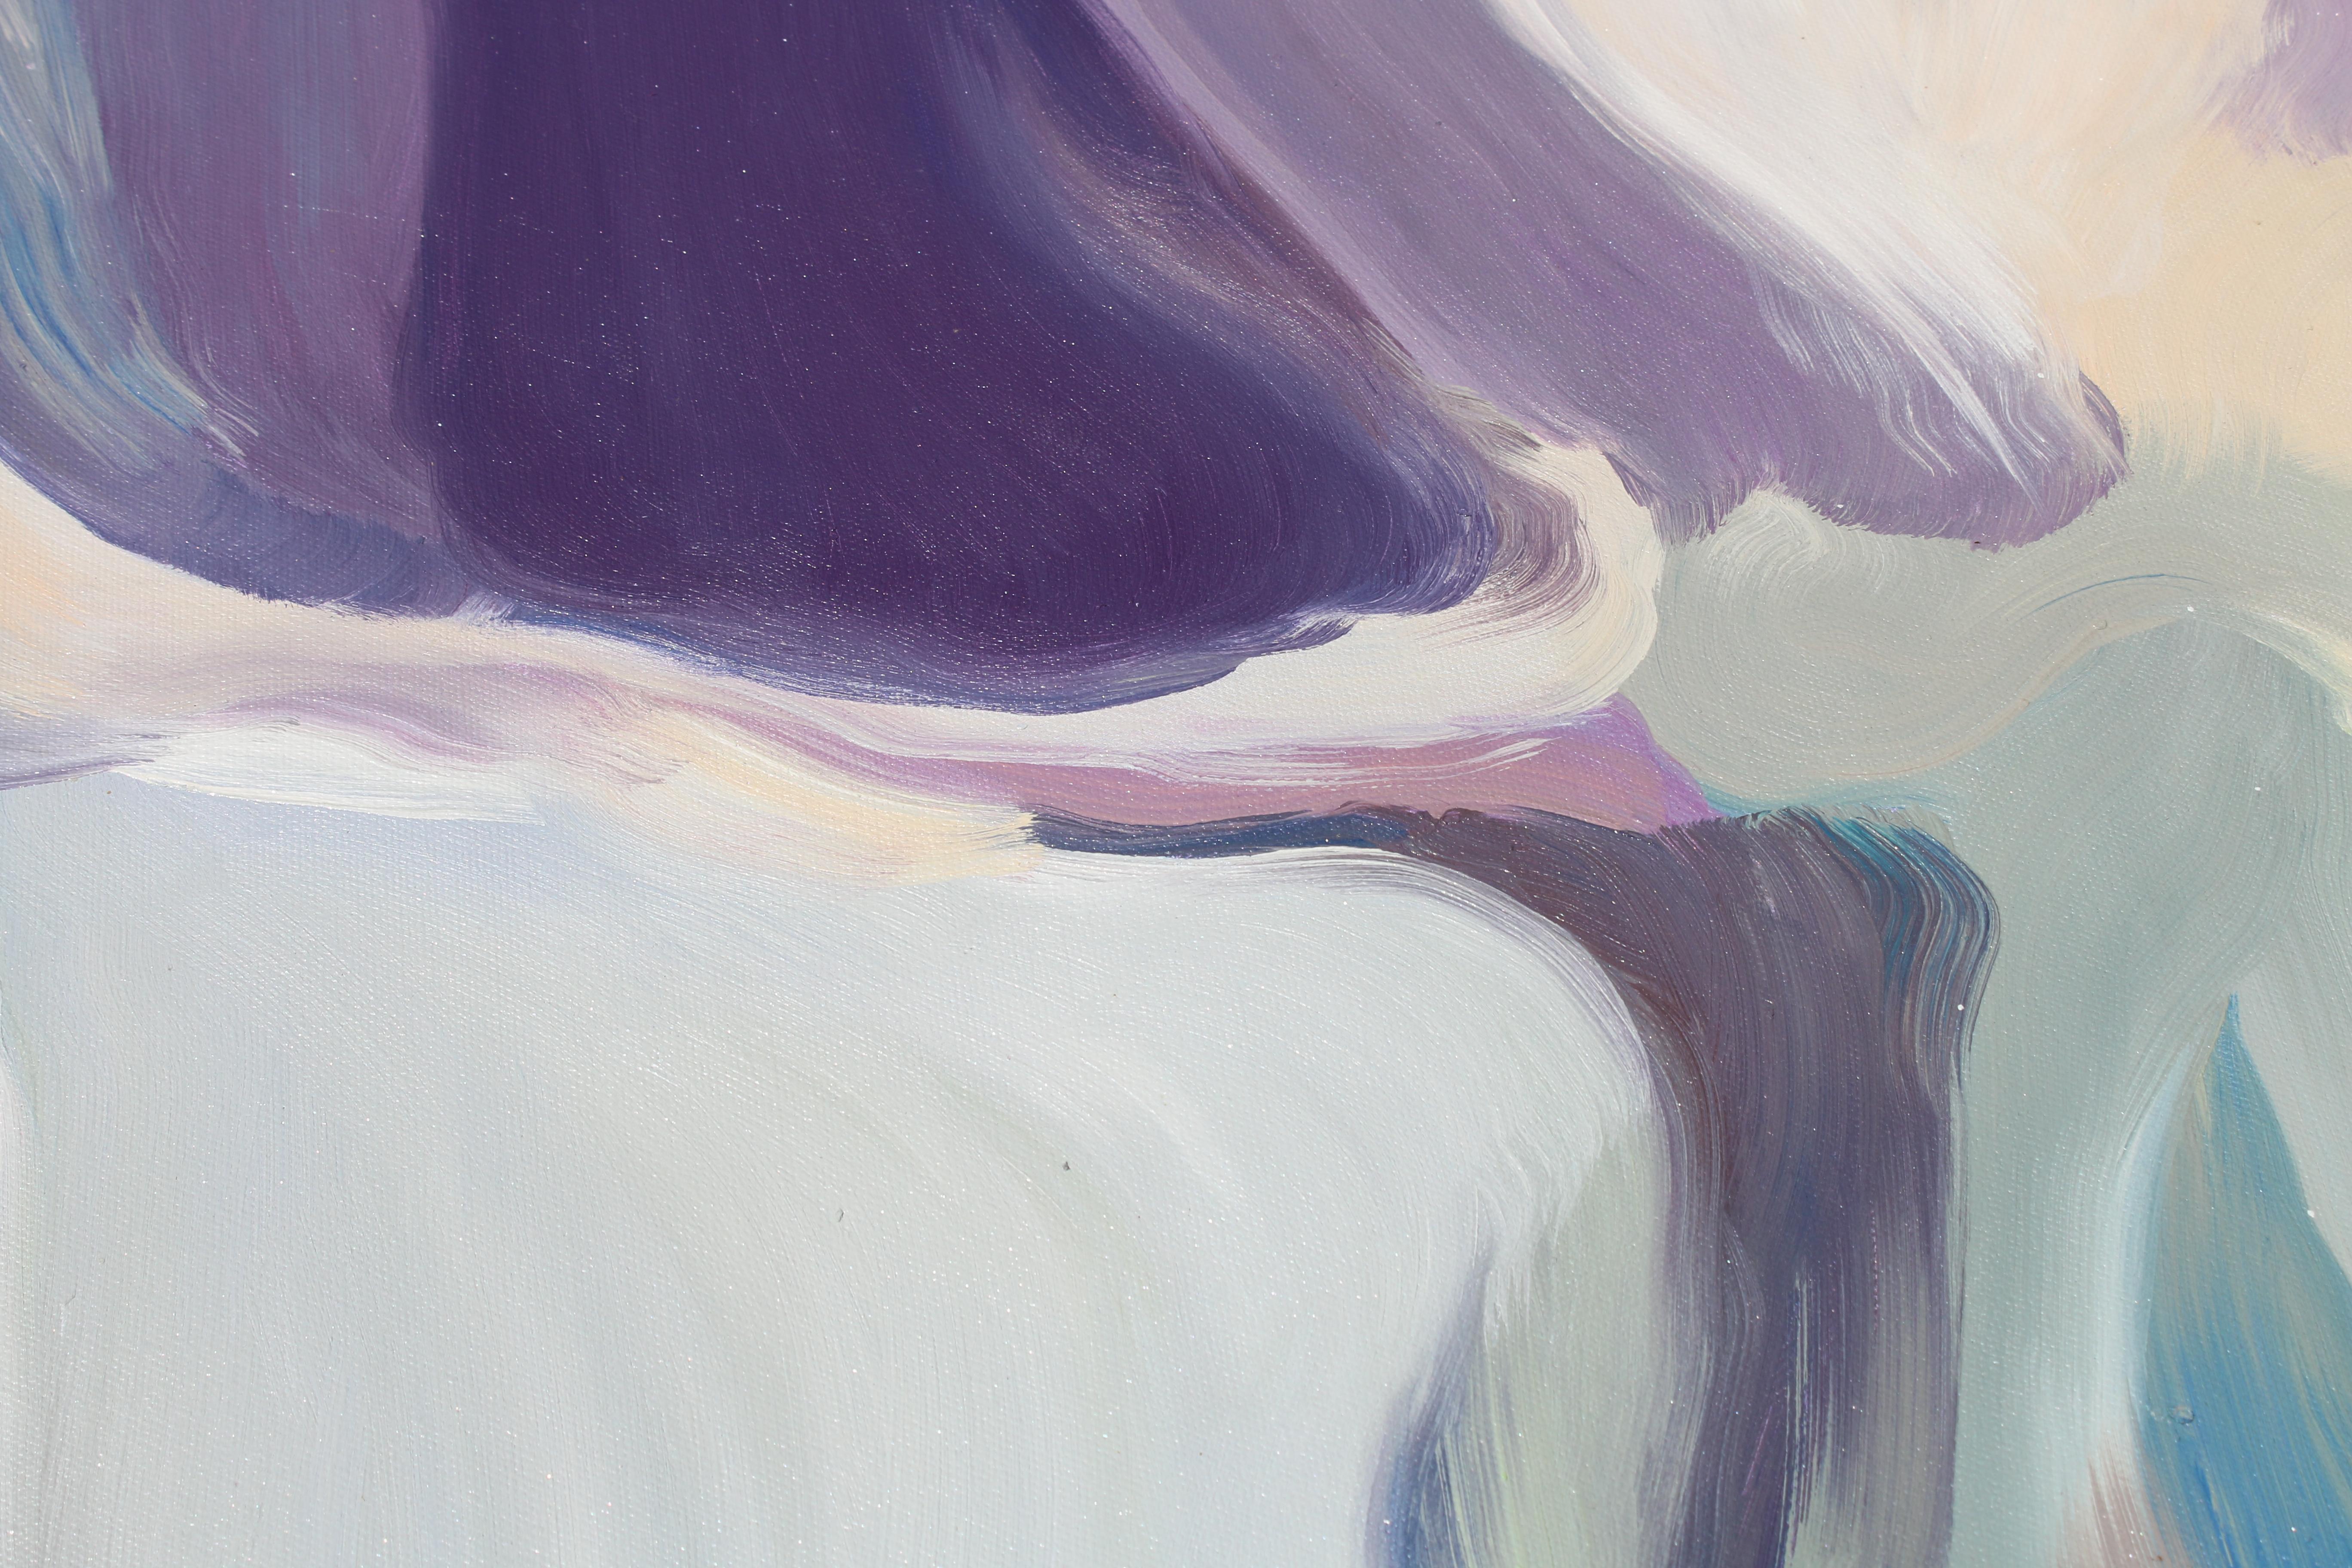 Zeitgenössisches abstraktes Ölgemälde auf Leinwand in Violett und Blau, 38 x 38 Zoll, Gemälde mit gemischten Gefühlen (Grau), Abstract Painting, von Irena Orlov